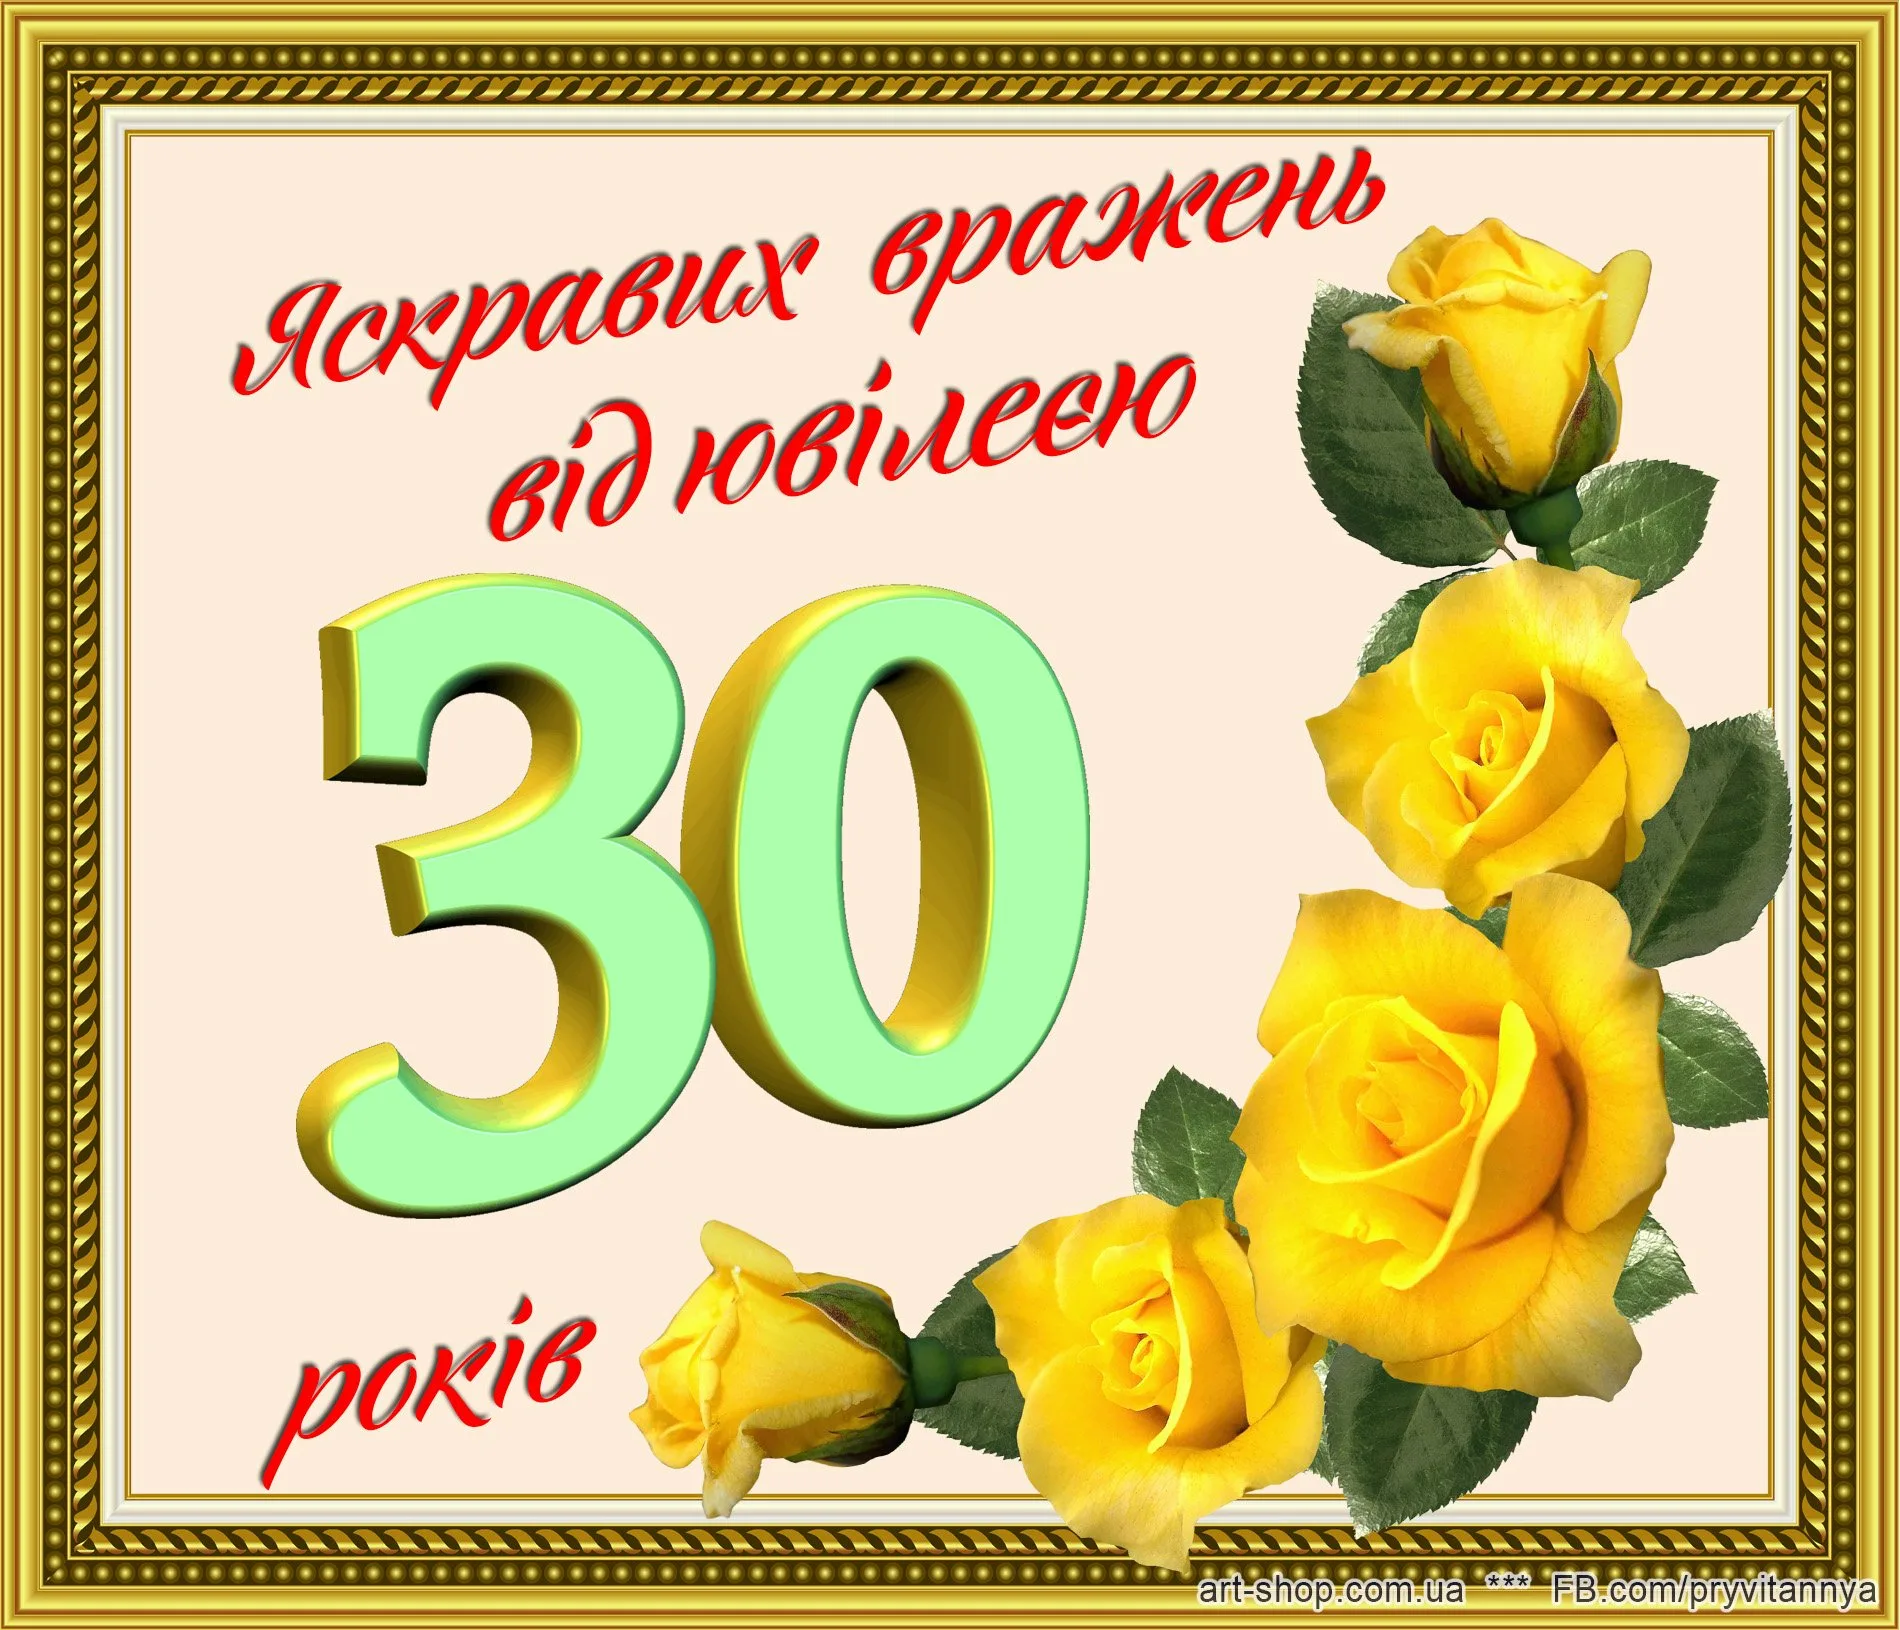 Фото Привітання на весілля на українській мові #94